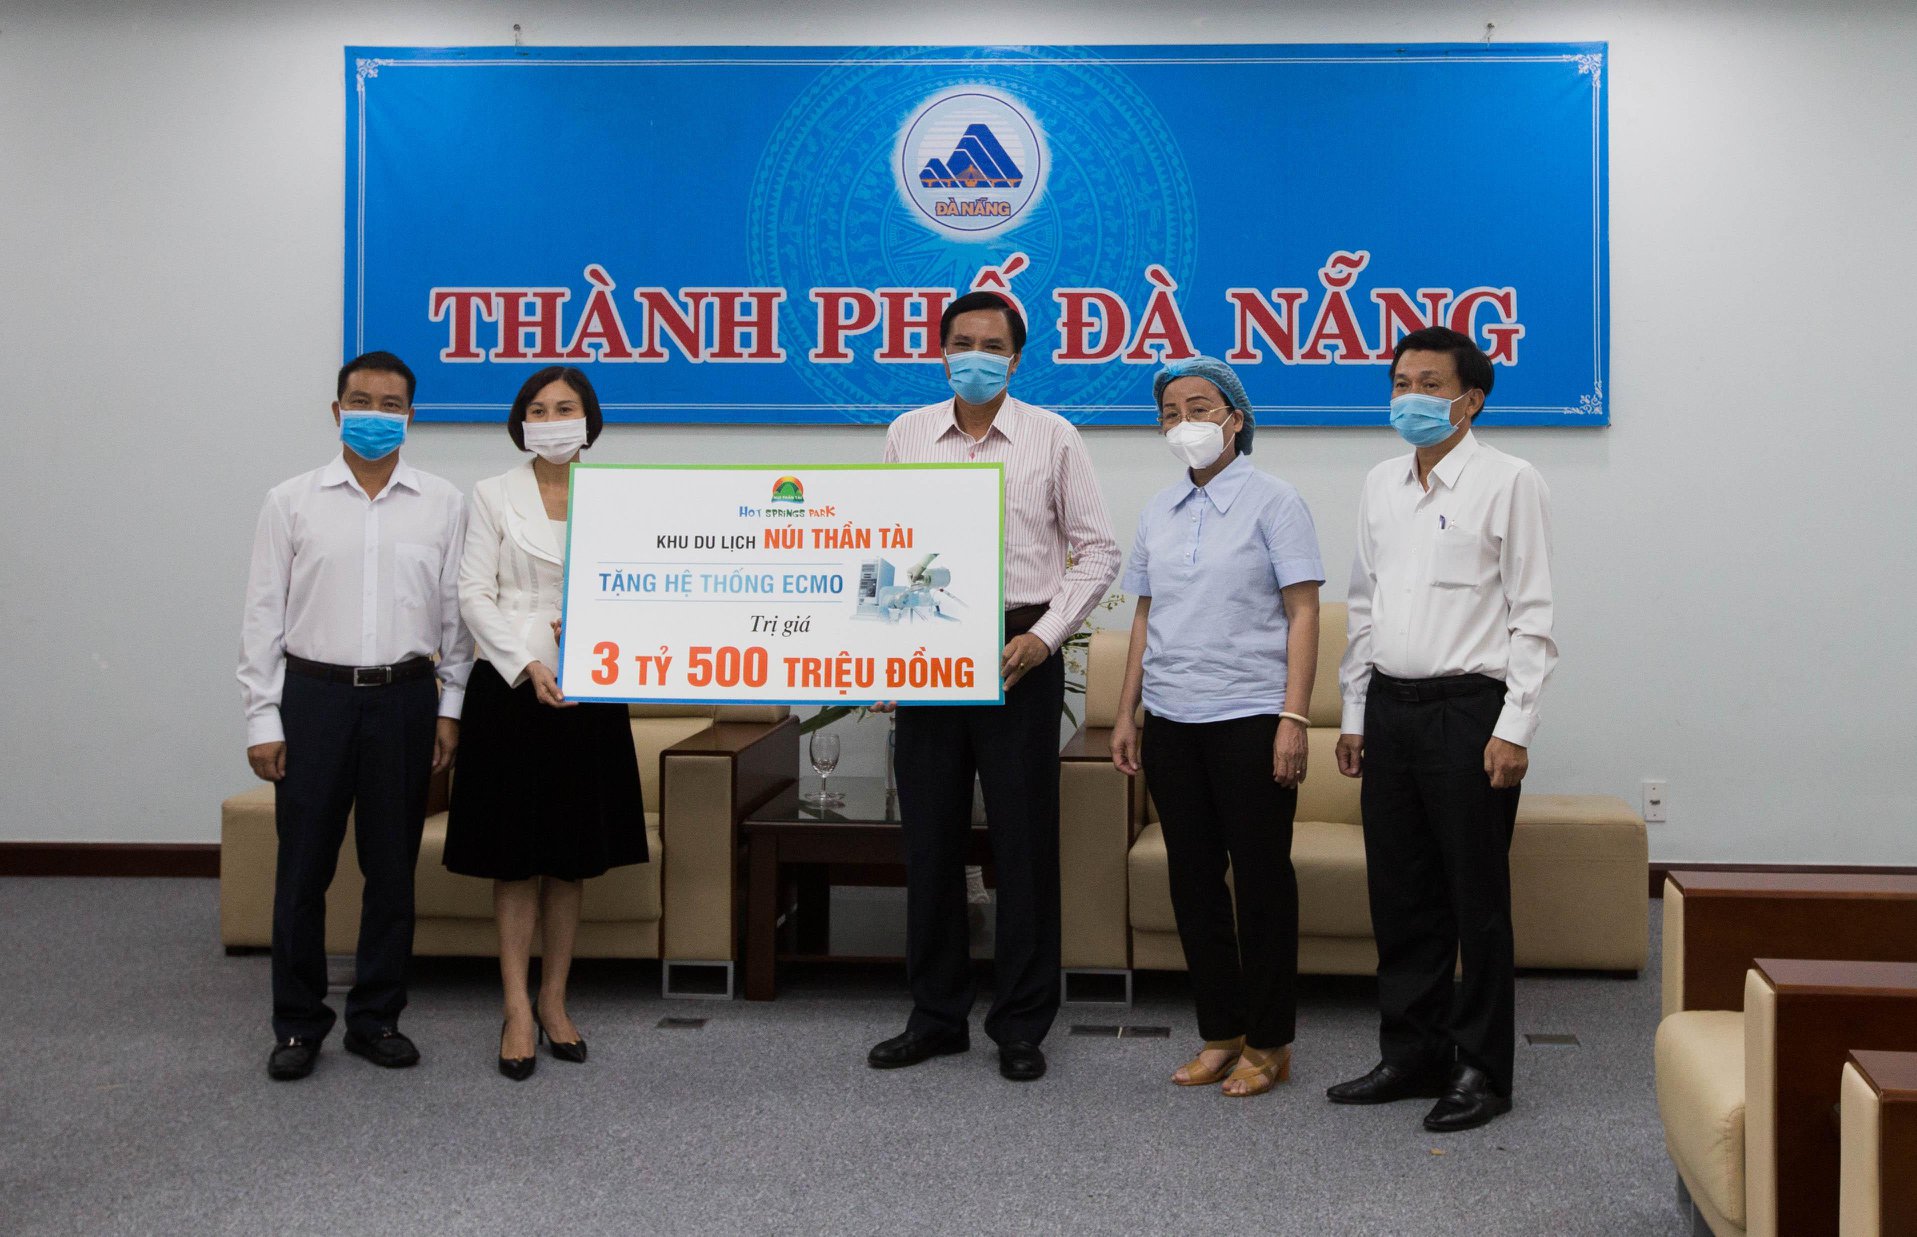 Đại diện Công ty DHC (bên trái) trao bảng tượng trưng tri giá thiết bị cho lãnh đạo thành phố Đà Nẵng